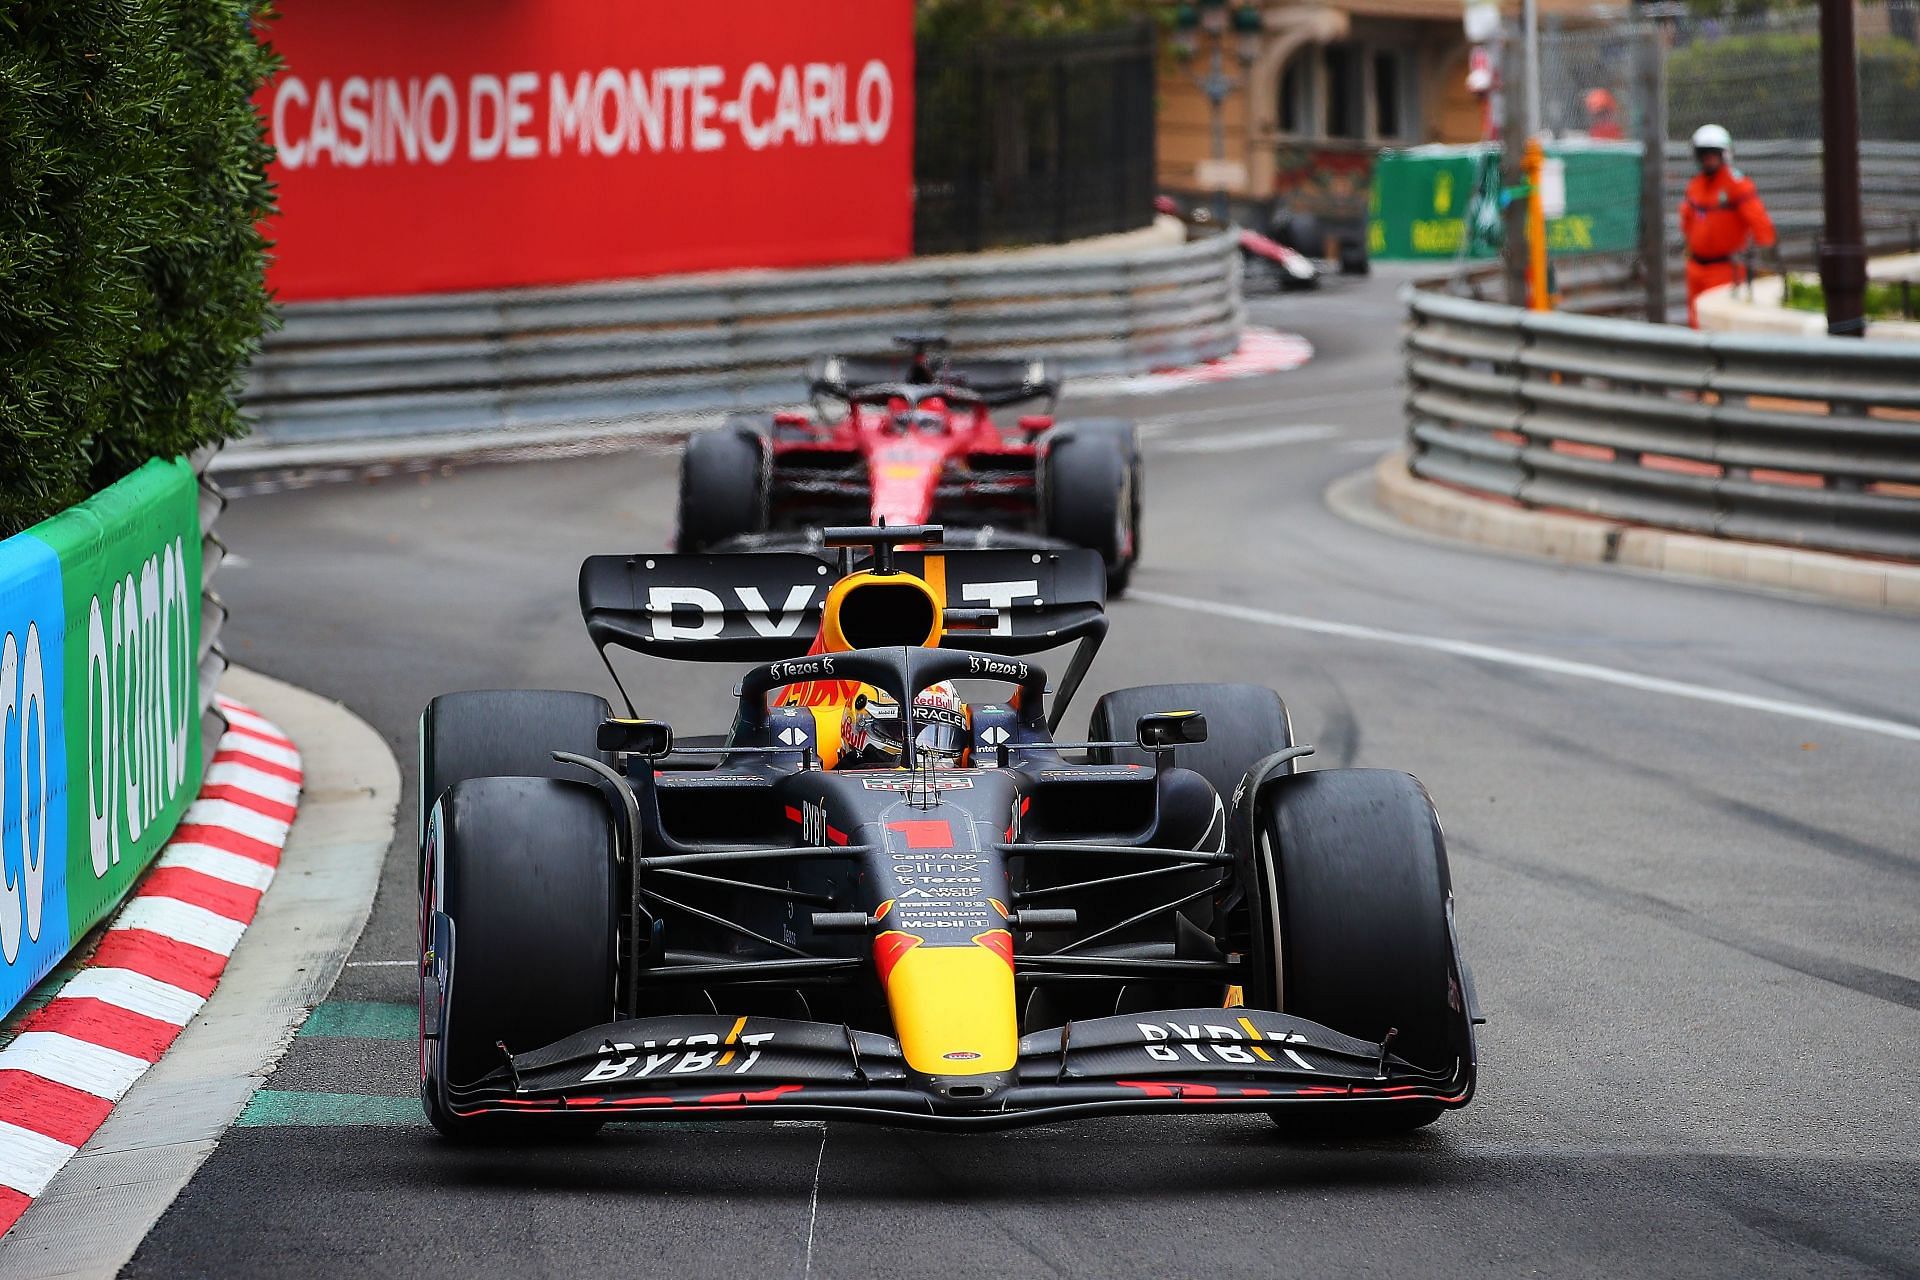 Max Verstappen at the F1 Grand Prix of Monaco